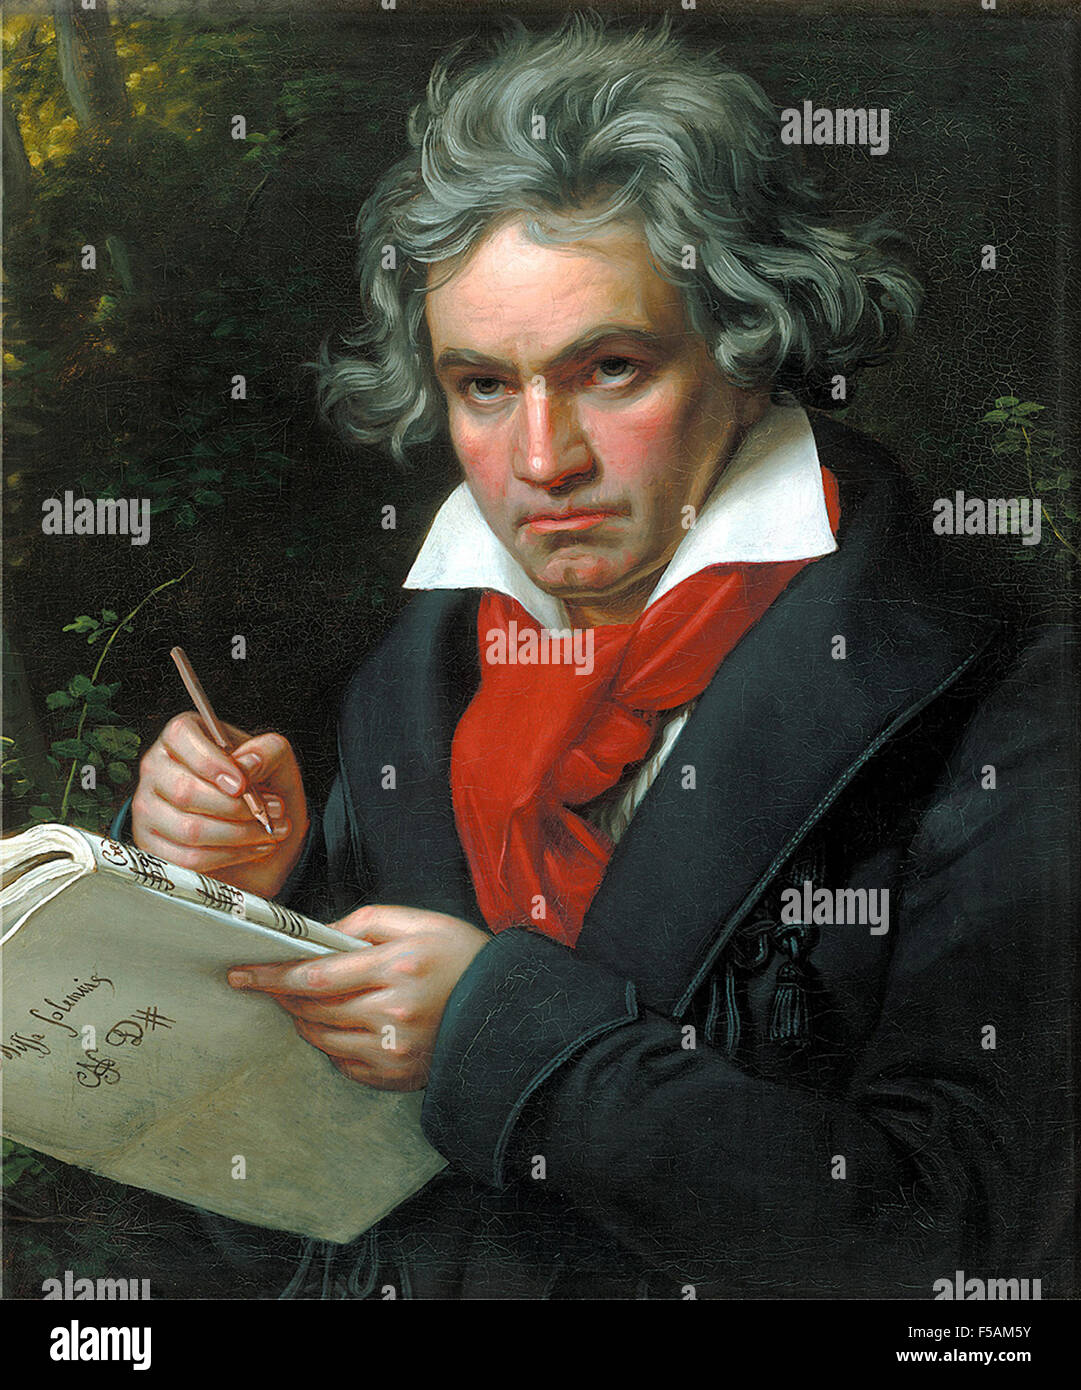 LUDWIG van Beethoven (1770-1827) compositeur allemand comme peint par Joseph Stieler en 1820 Banque D'Images